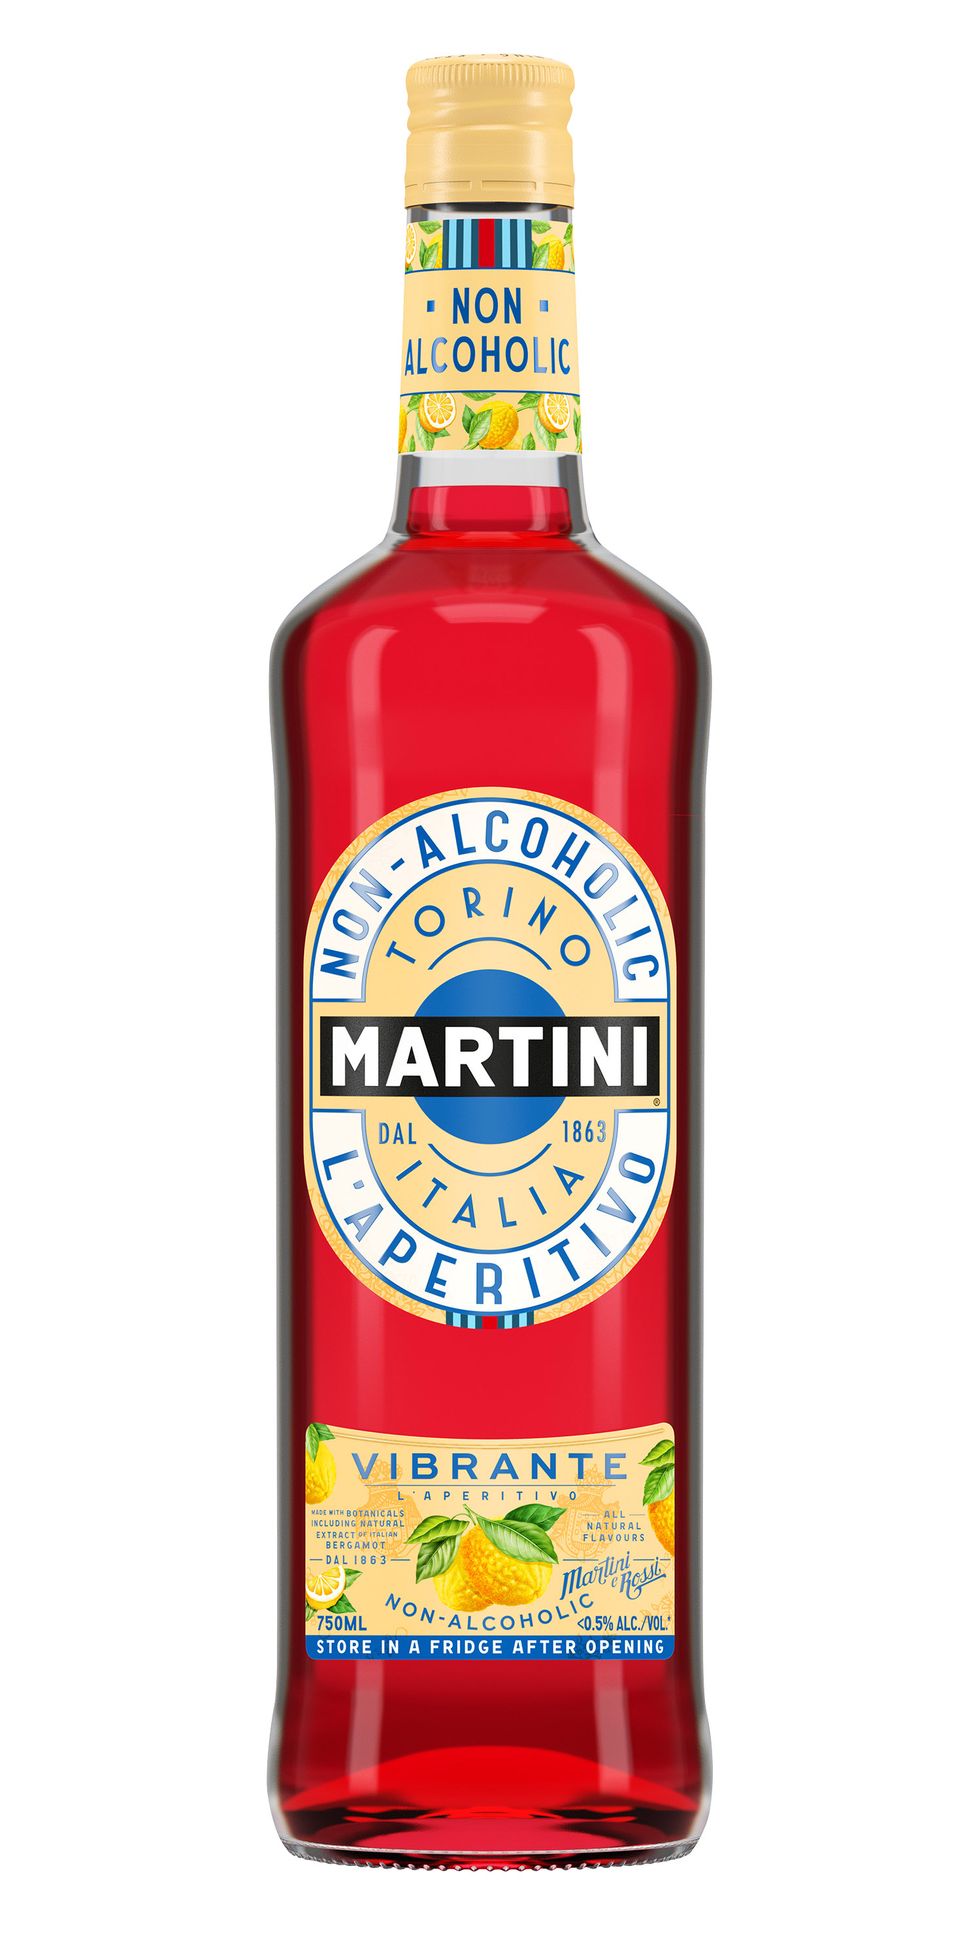 Vibrante l'aperitivo - Martini - 750ml